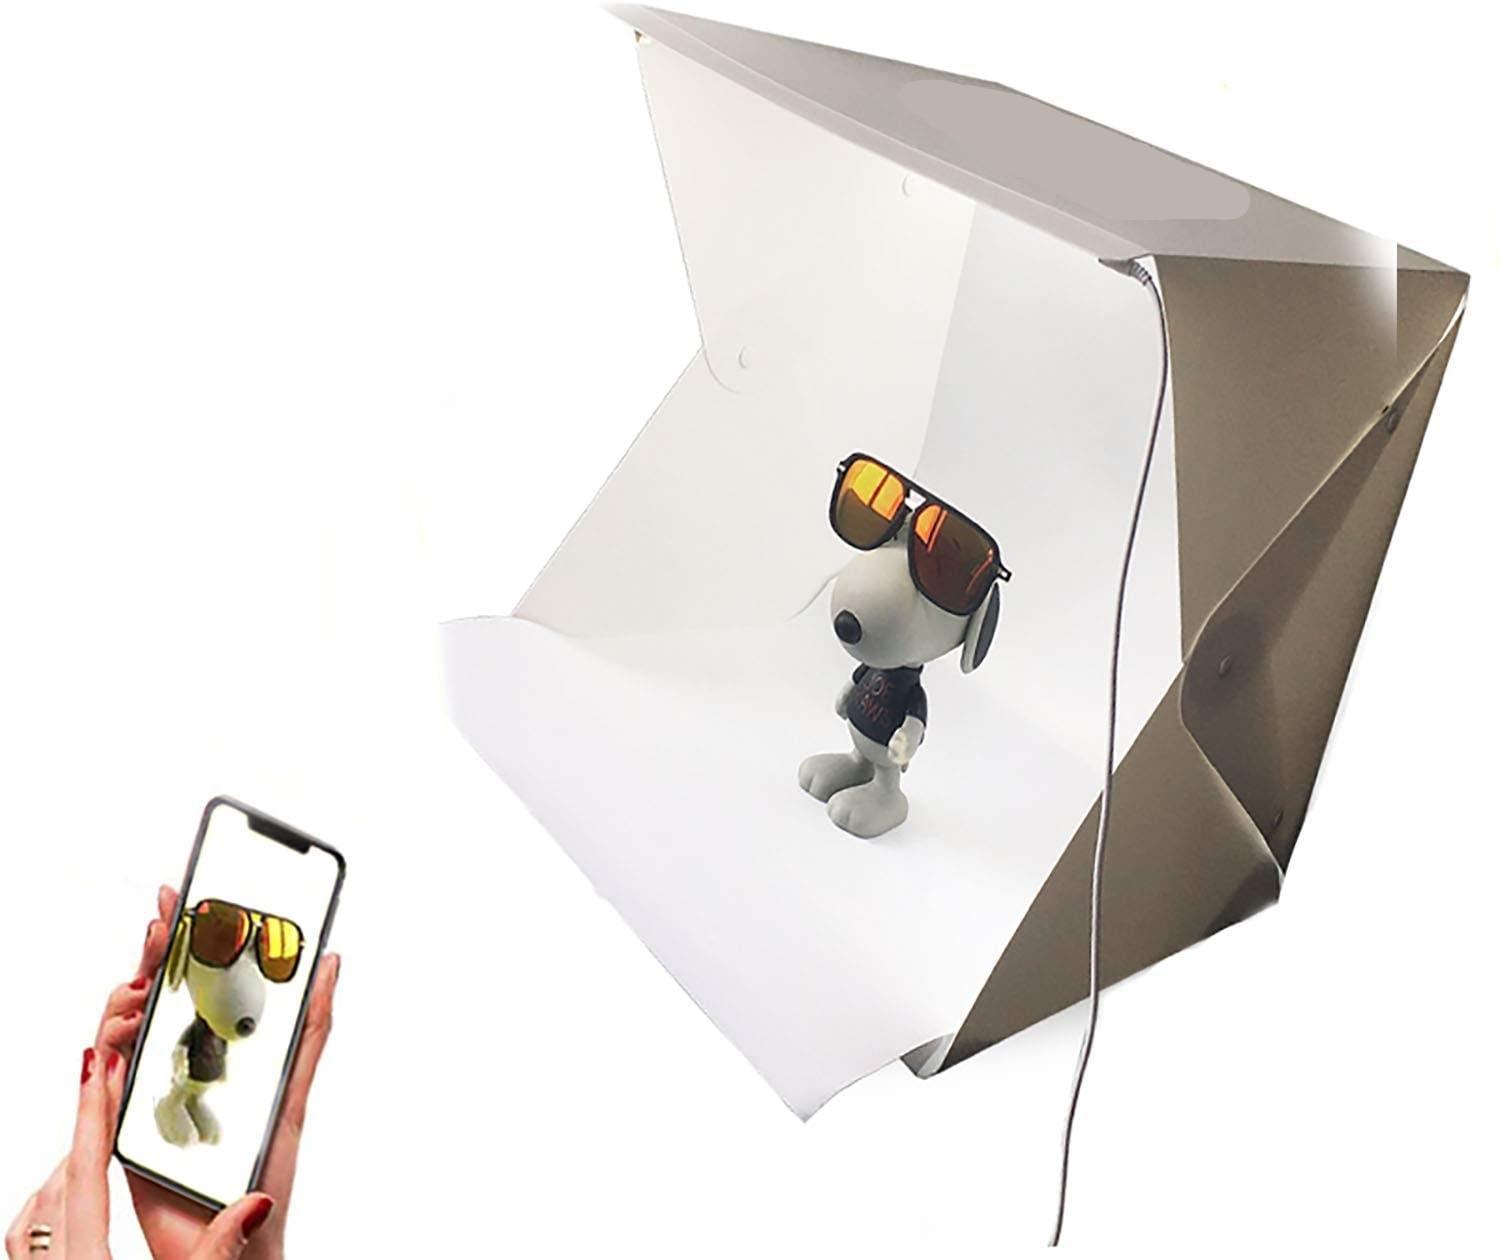 Photo Studio Tent Mini Foldable Photography Studio Portable Light Box Kit with LED Light Tent Adjustable Brightness LED Light an